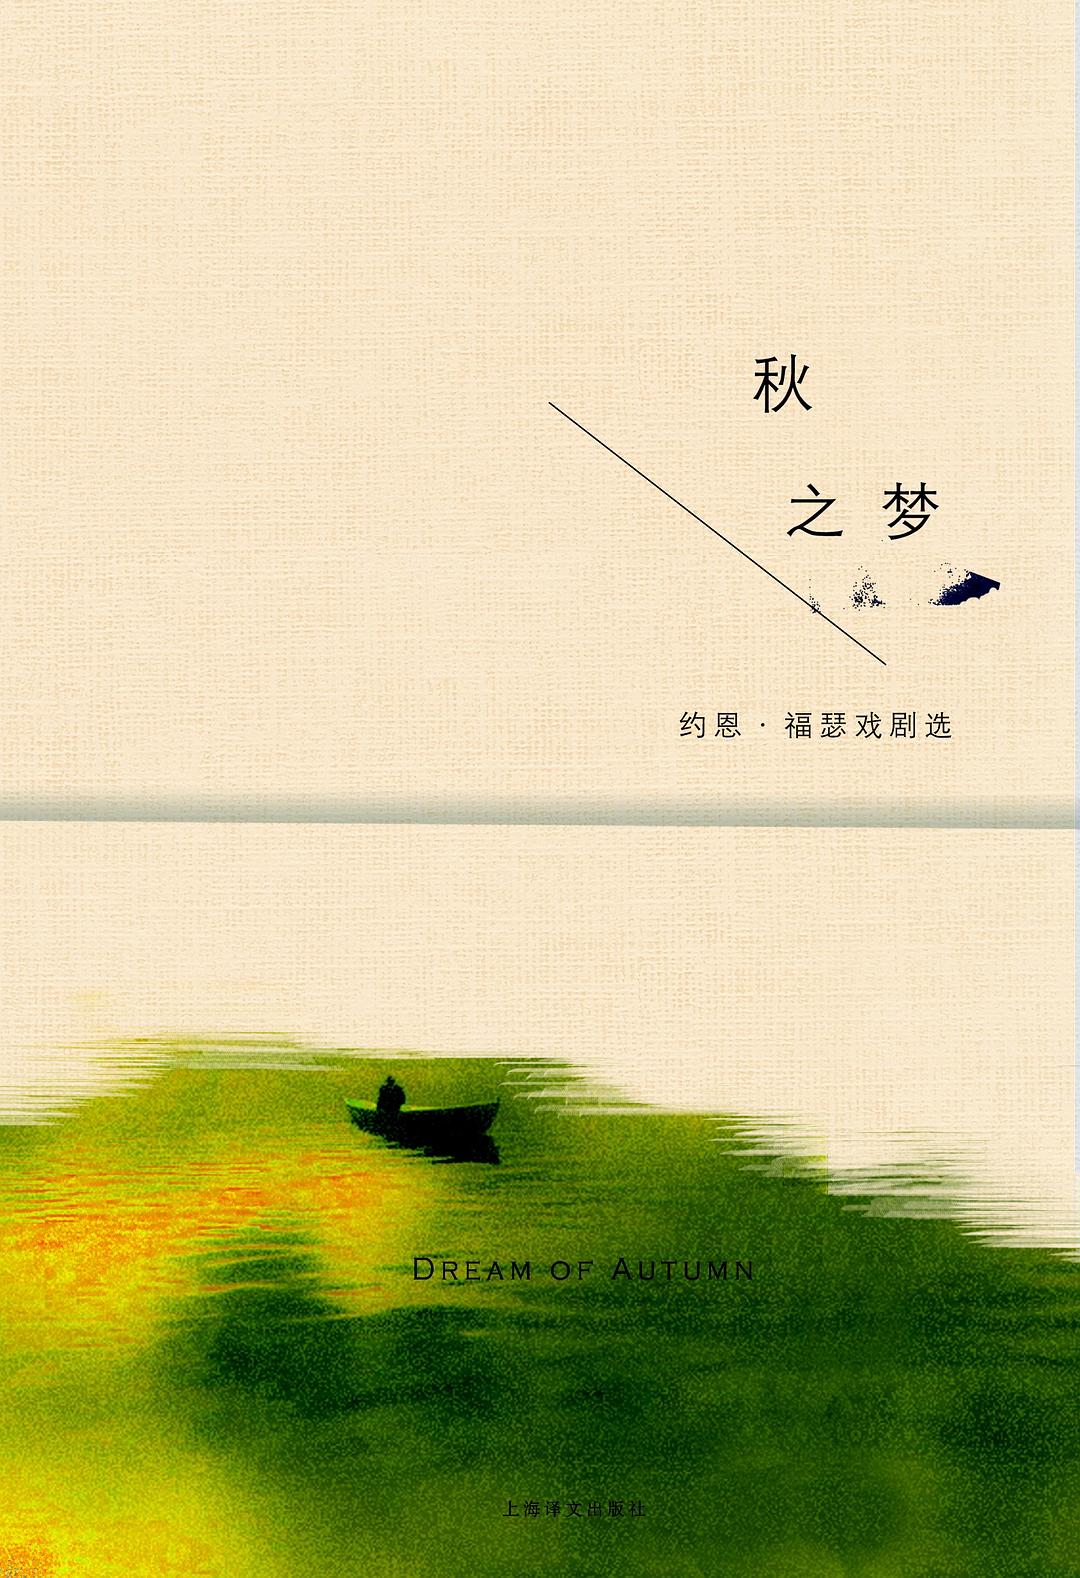 《秋之梦》，2016，上海译文出版社